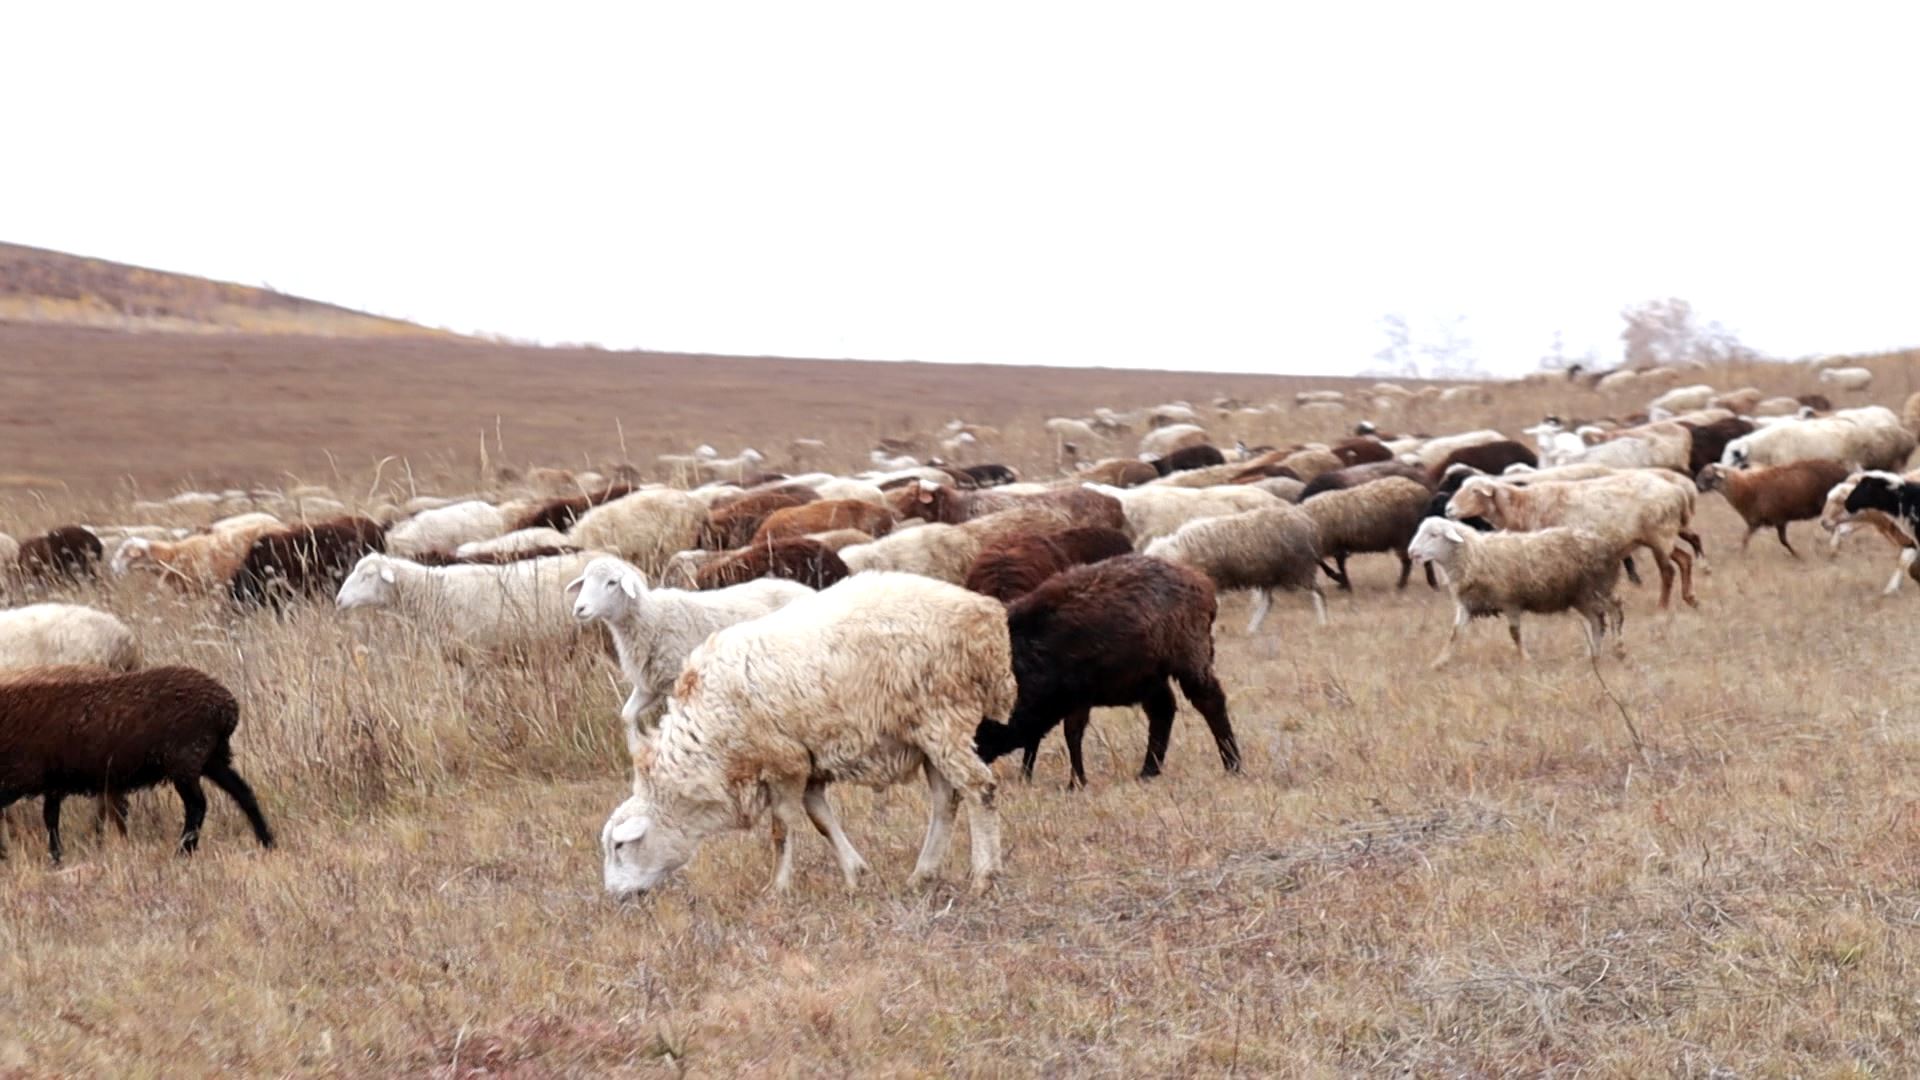 Забайкальским сельхозпроизводителям предоставят товарный заём для покупки баранов